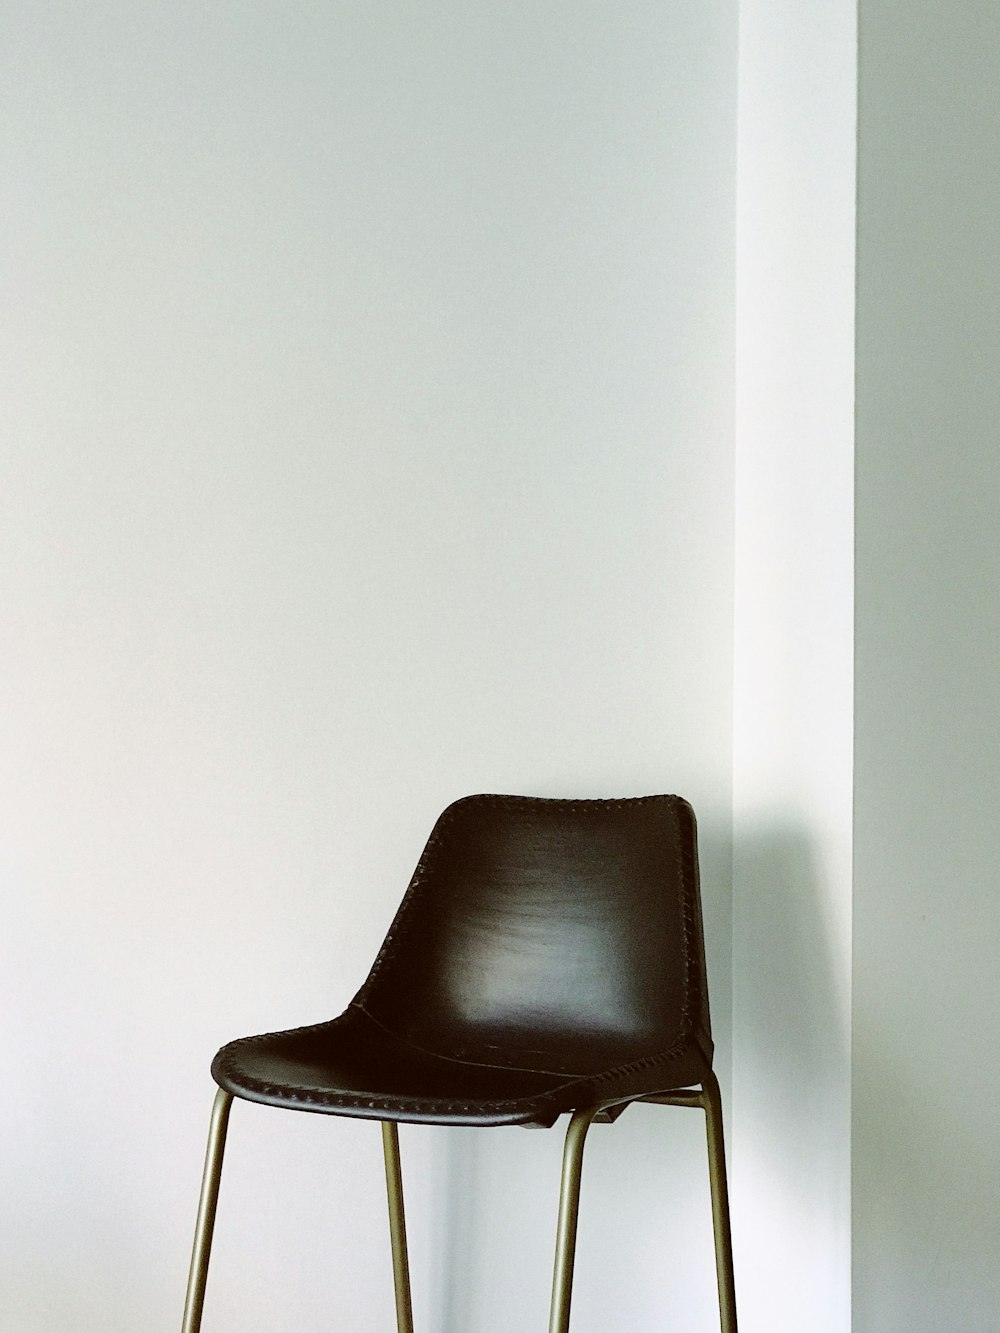 brauner Stuhl in der Nähe einer weiß gestrichenen Wand